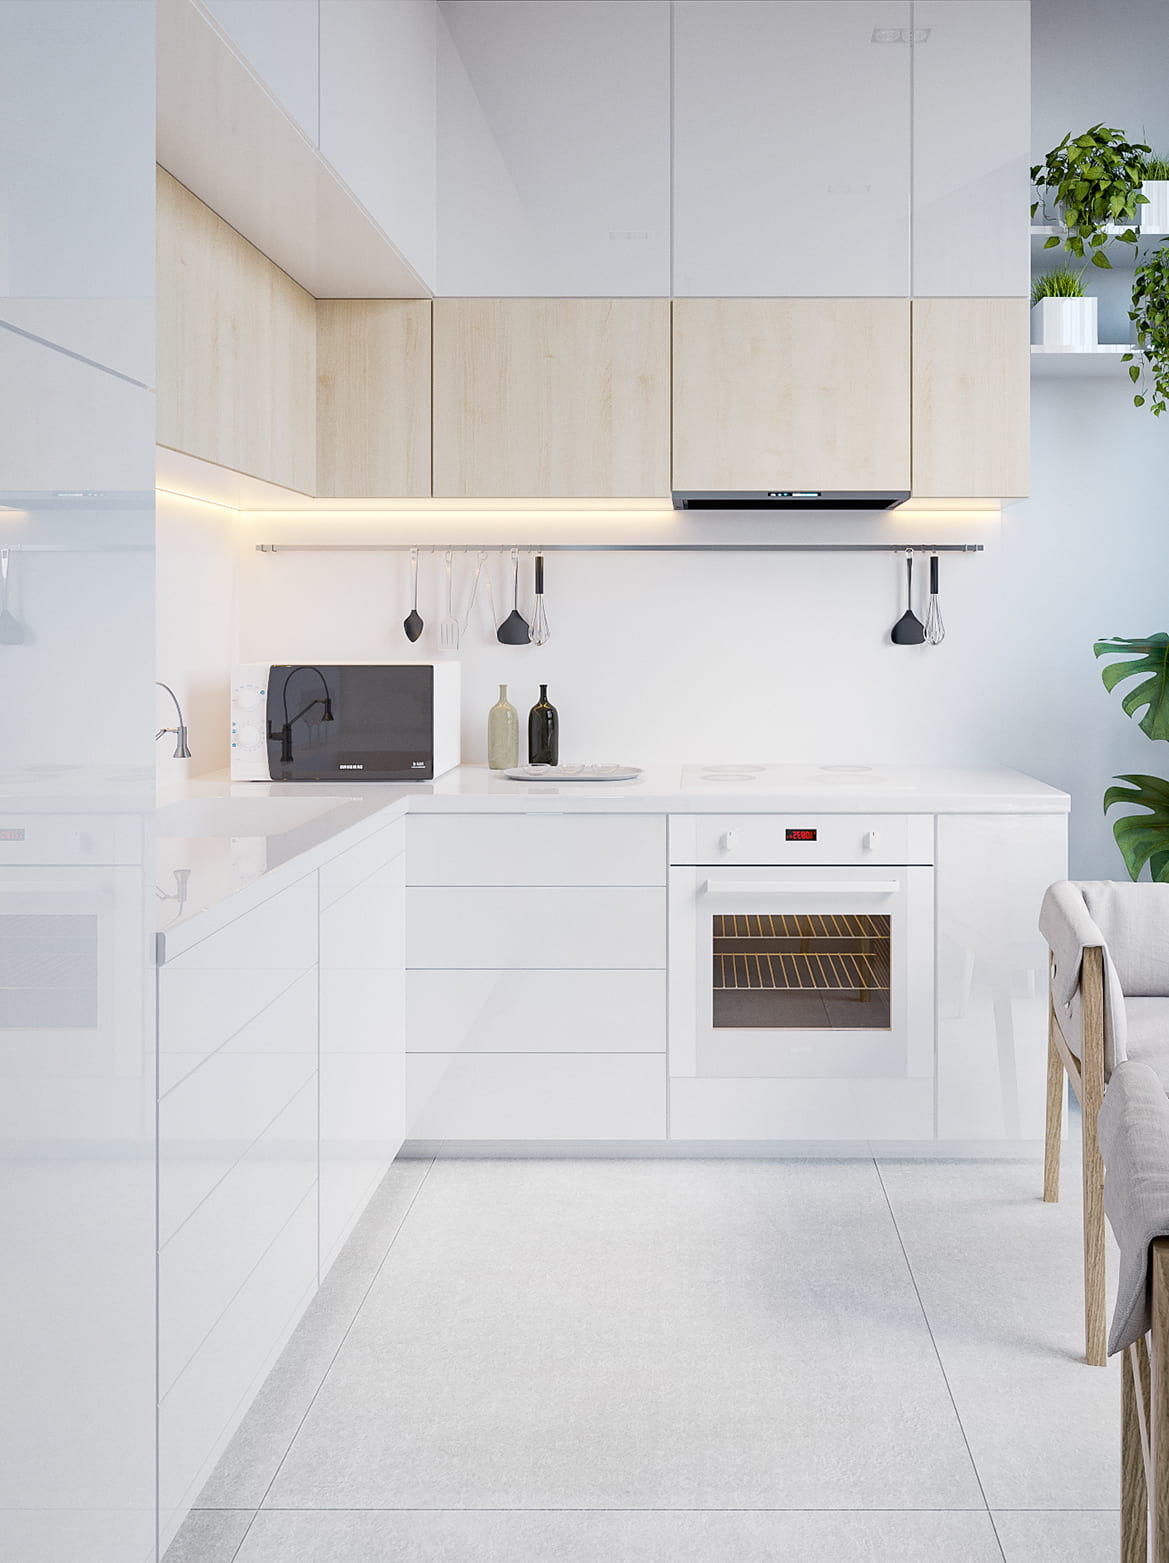 Выразительный интерьер белой кухни с хорошо сбалансированным LED освещением рабочей зоны